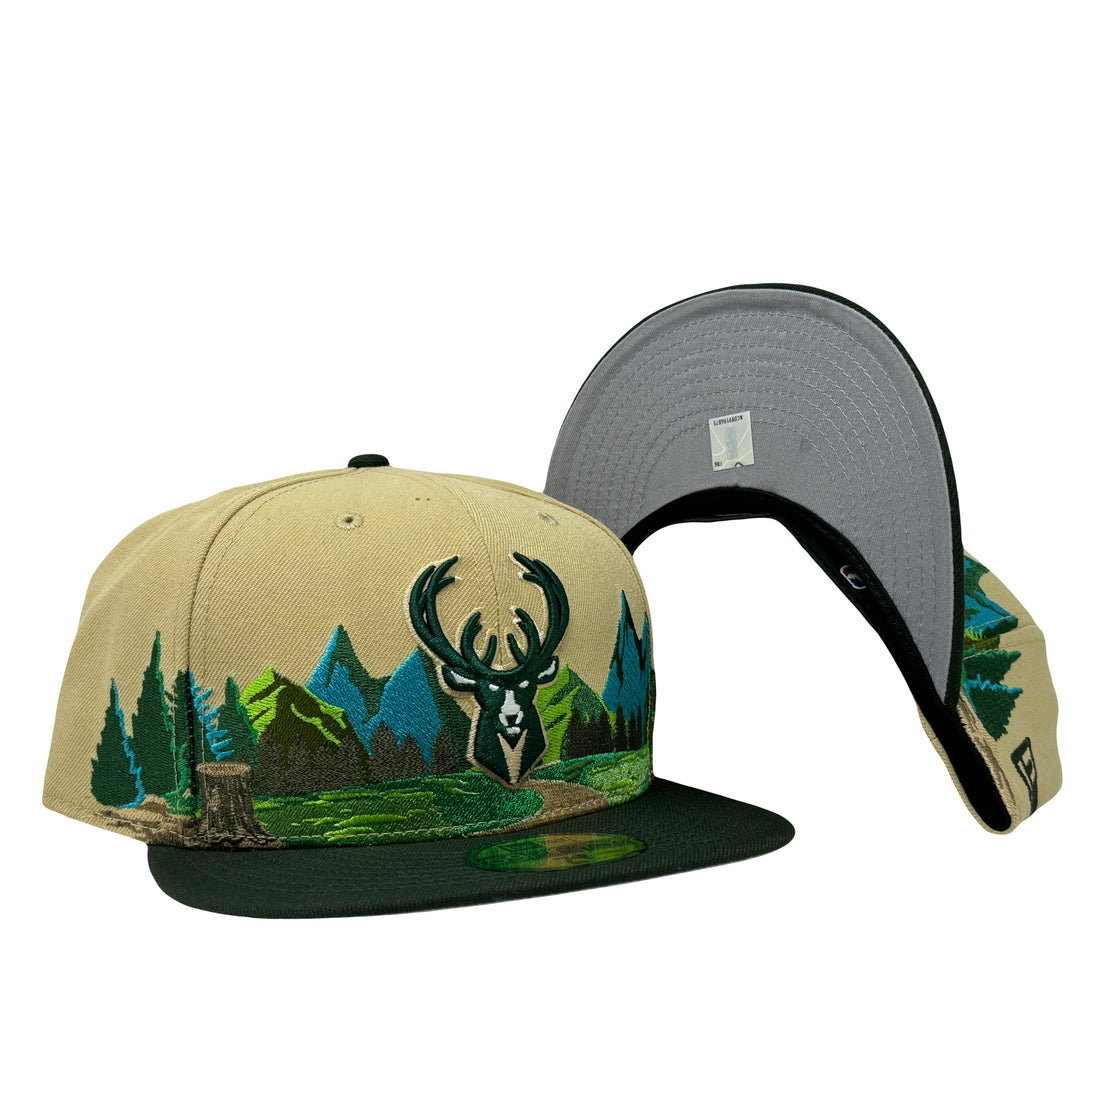 Milwaukee Bucks Mountain Pack 5950 New Era Fitted Hat